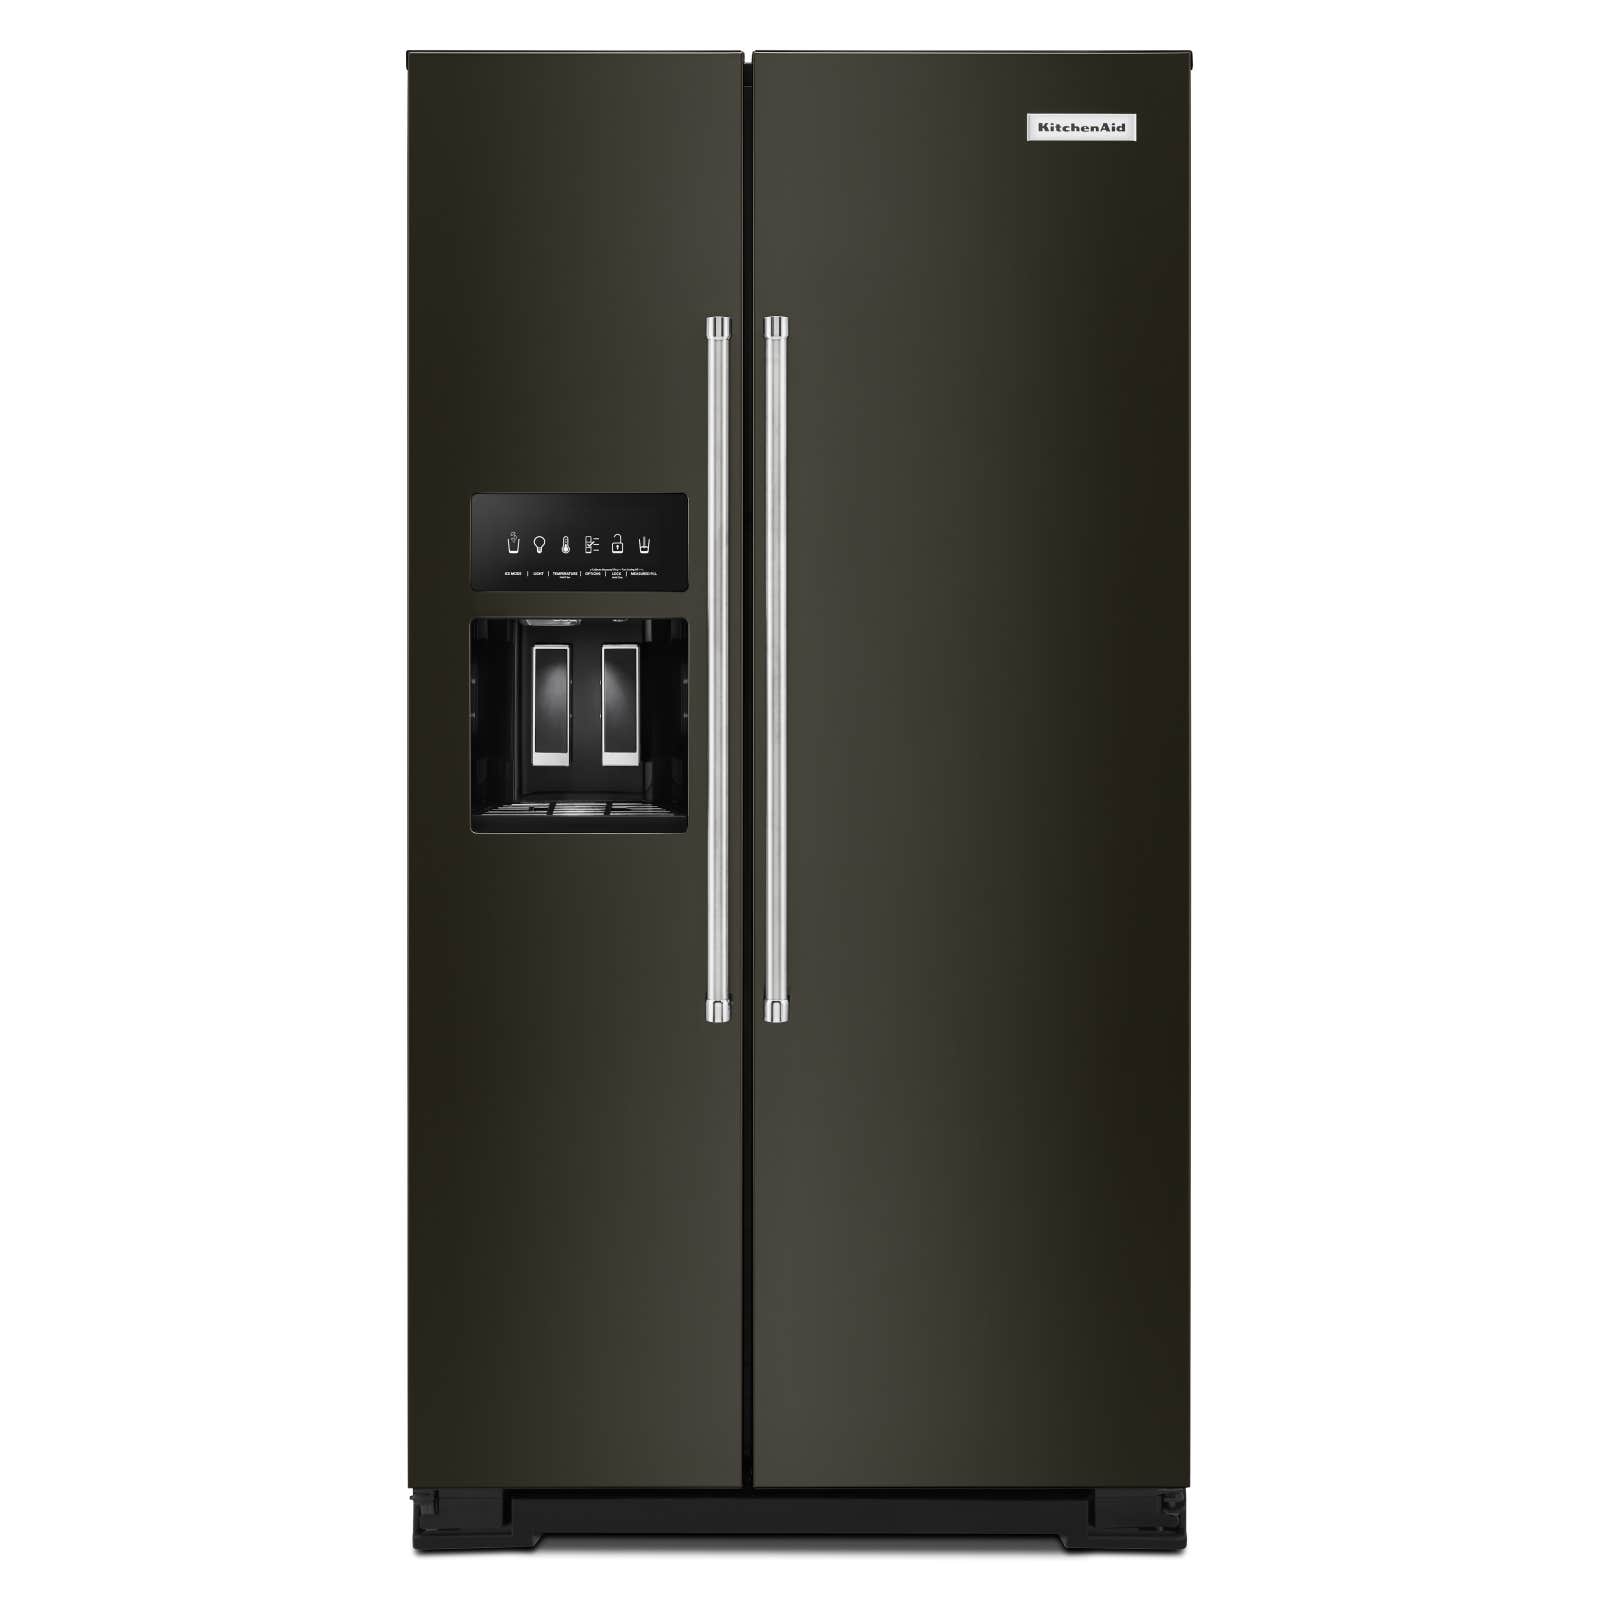 KitchenAid Réfrigérateur KRSC700HBS en couleur Acier Inoxydable Noir présenté par Corbeil Éléctroménagers